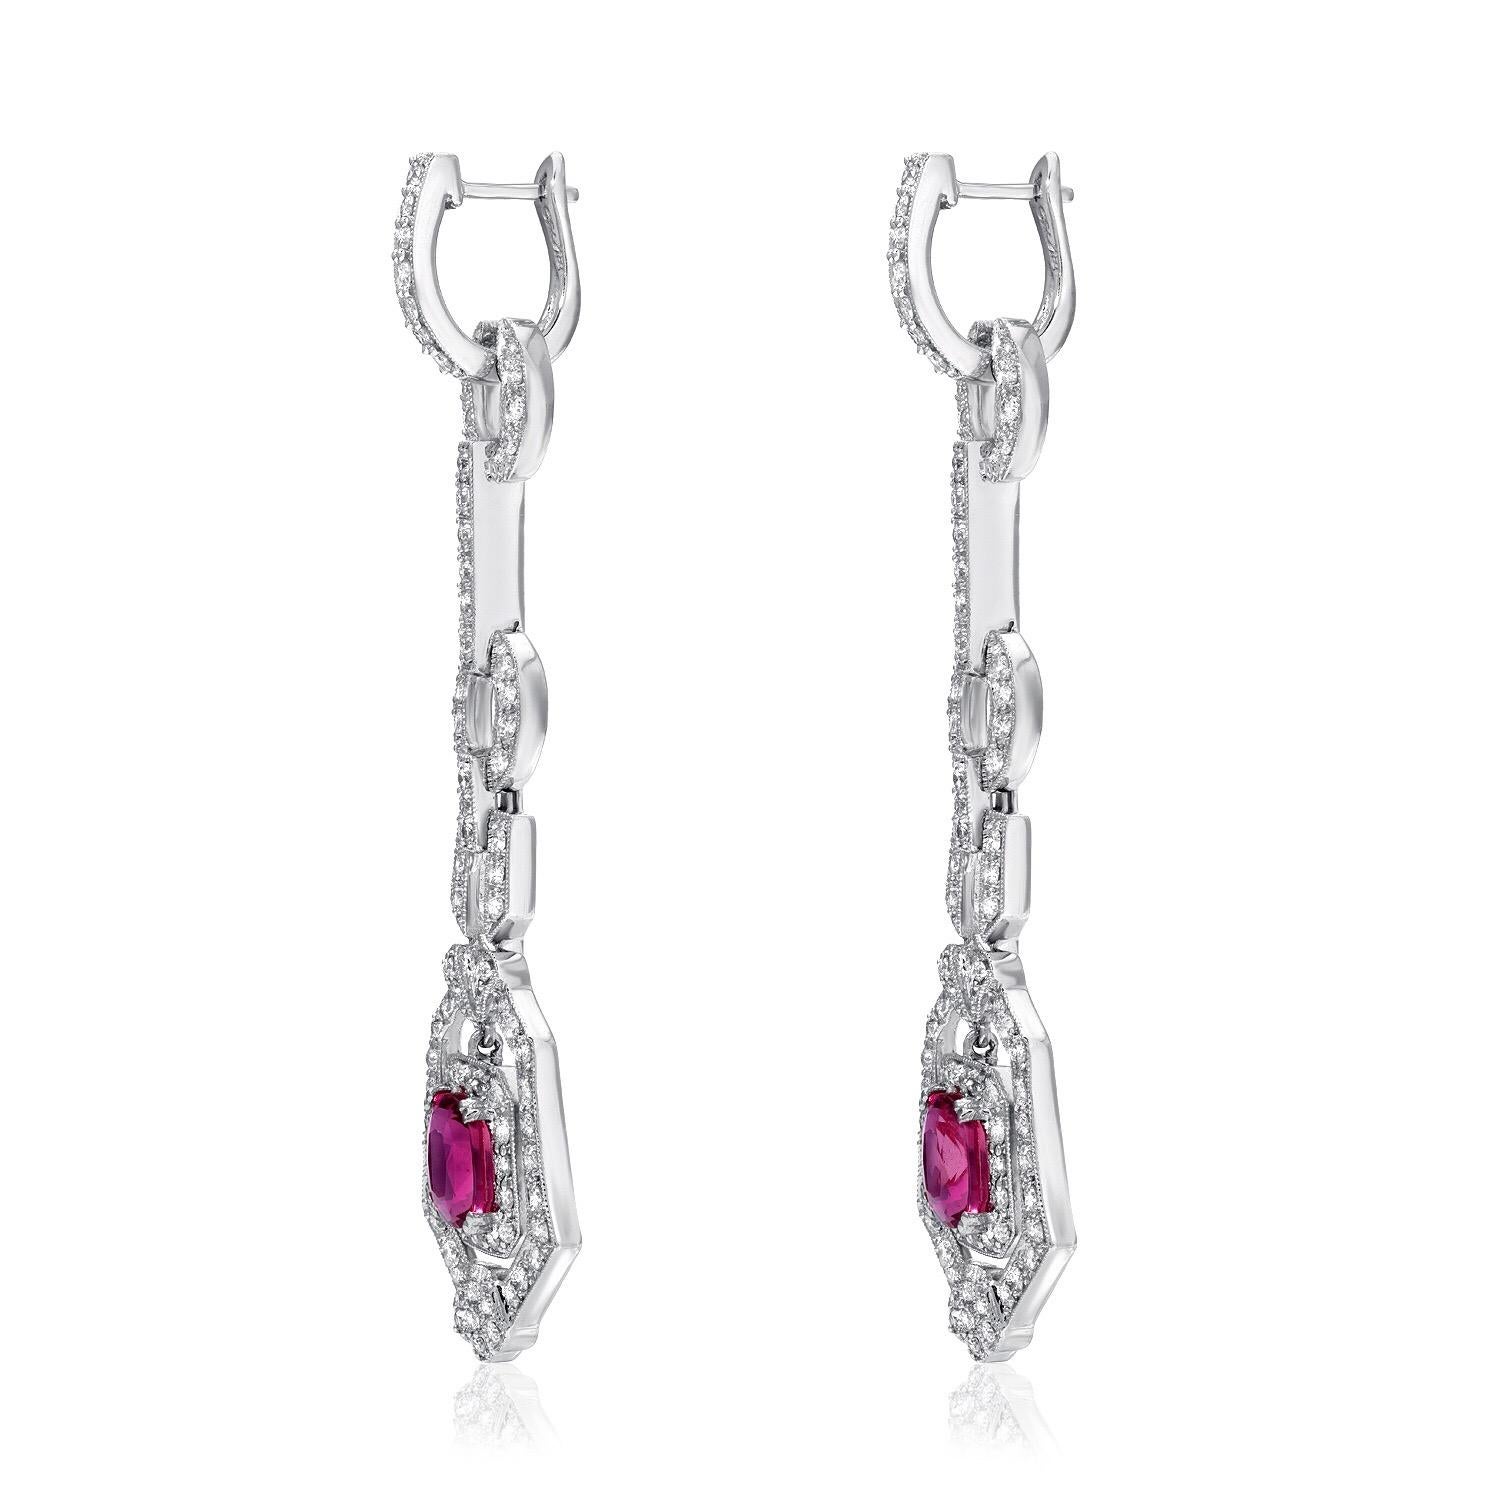 Rosa Saphir-Ohrringe mit einem Paar rosa Saphire im Kissenschliff mit einem Gesamtgewicht von 2,90 Karat, akzentuiert durch insgesamt 2,00 runde Diamanten, in 18 Karat Weißgold. Die mit Diamanten besetzten Oberteile können abgenommen und separat als